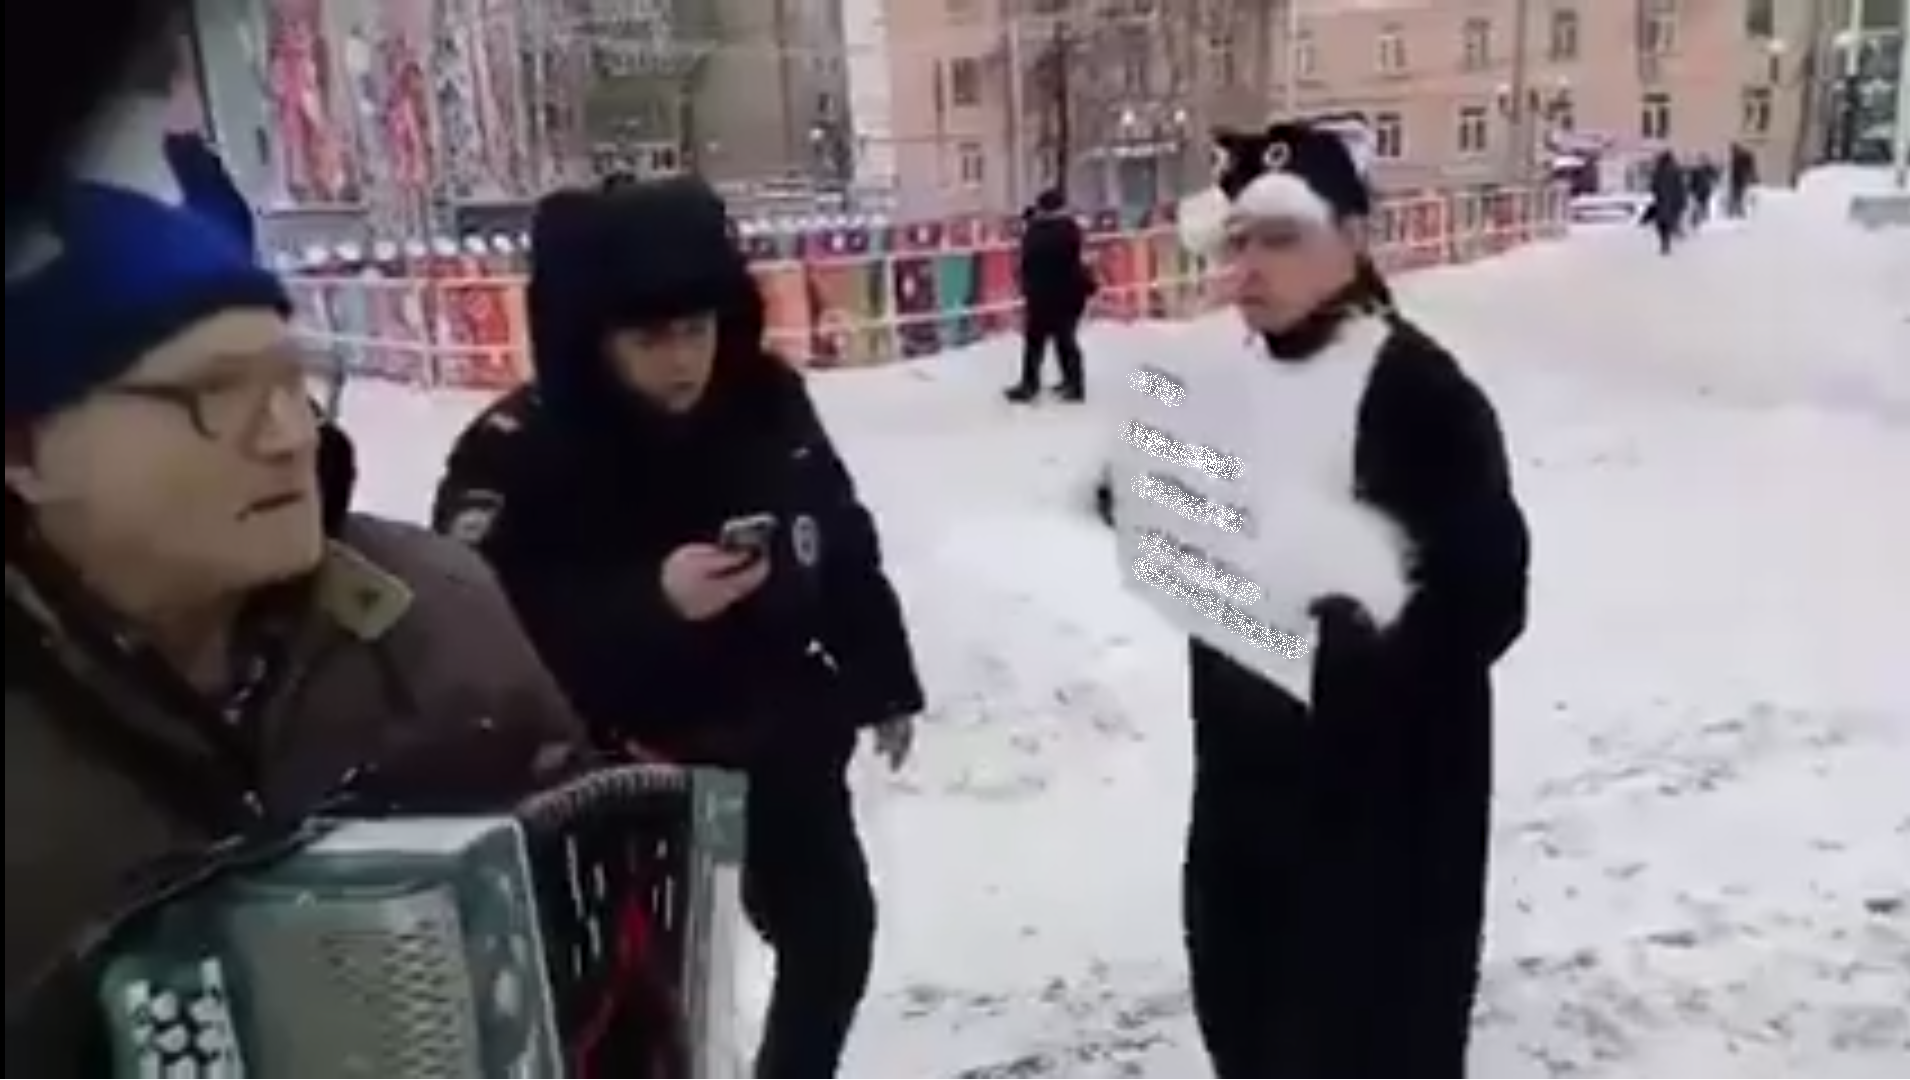 Абсурд дня: в Рязани задержали кота за плакат с негативными высказываниями о президенте